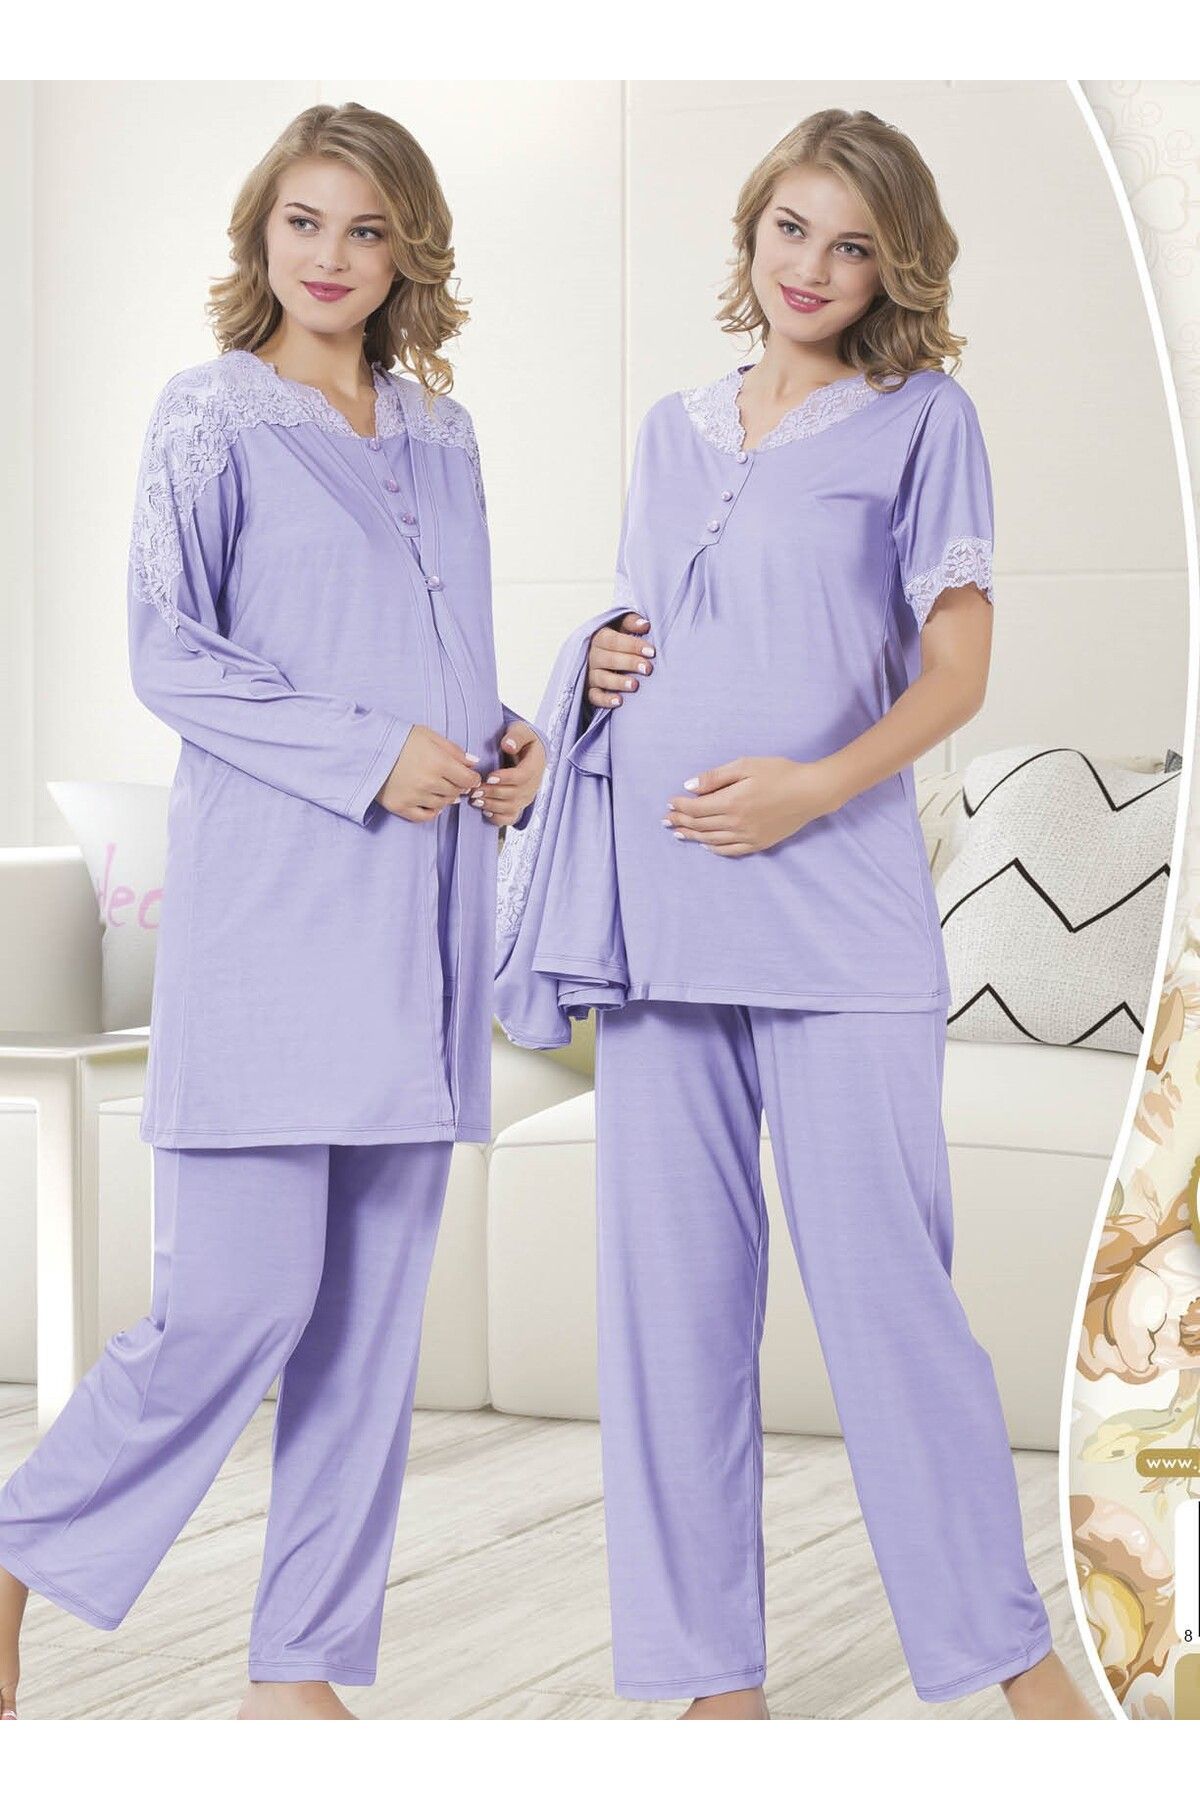 JENİKA Lila Dantel Ve Düğme Detaylı Sabahlıklı Penye Hamile Pijama Takımı 3 Lü